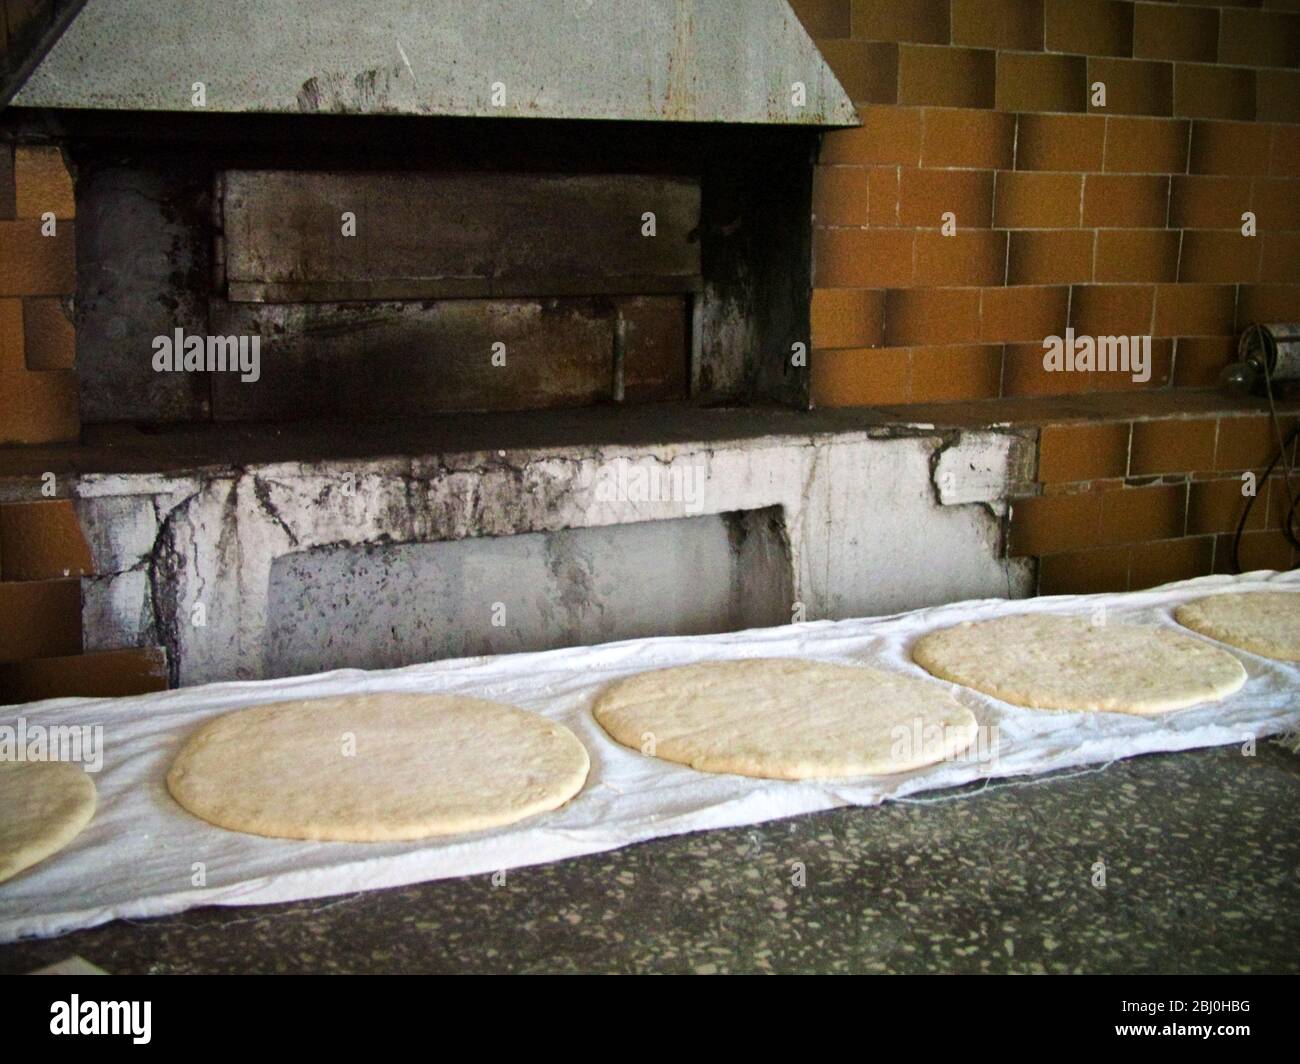 Grandes pains ronds plats de pain montant sur des chiffons propres sur le comptoir de la boulangerie quayside à Seliimiye, sur la côte sud de l'Anatolie, Turquie - Banque D'Images